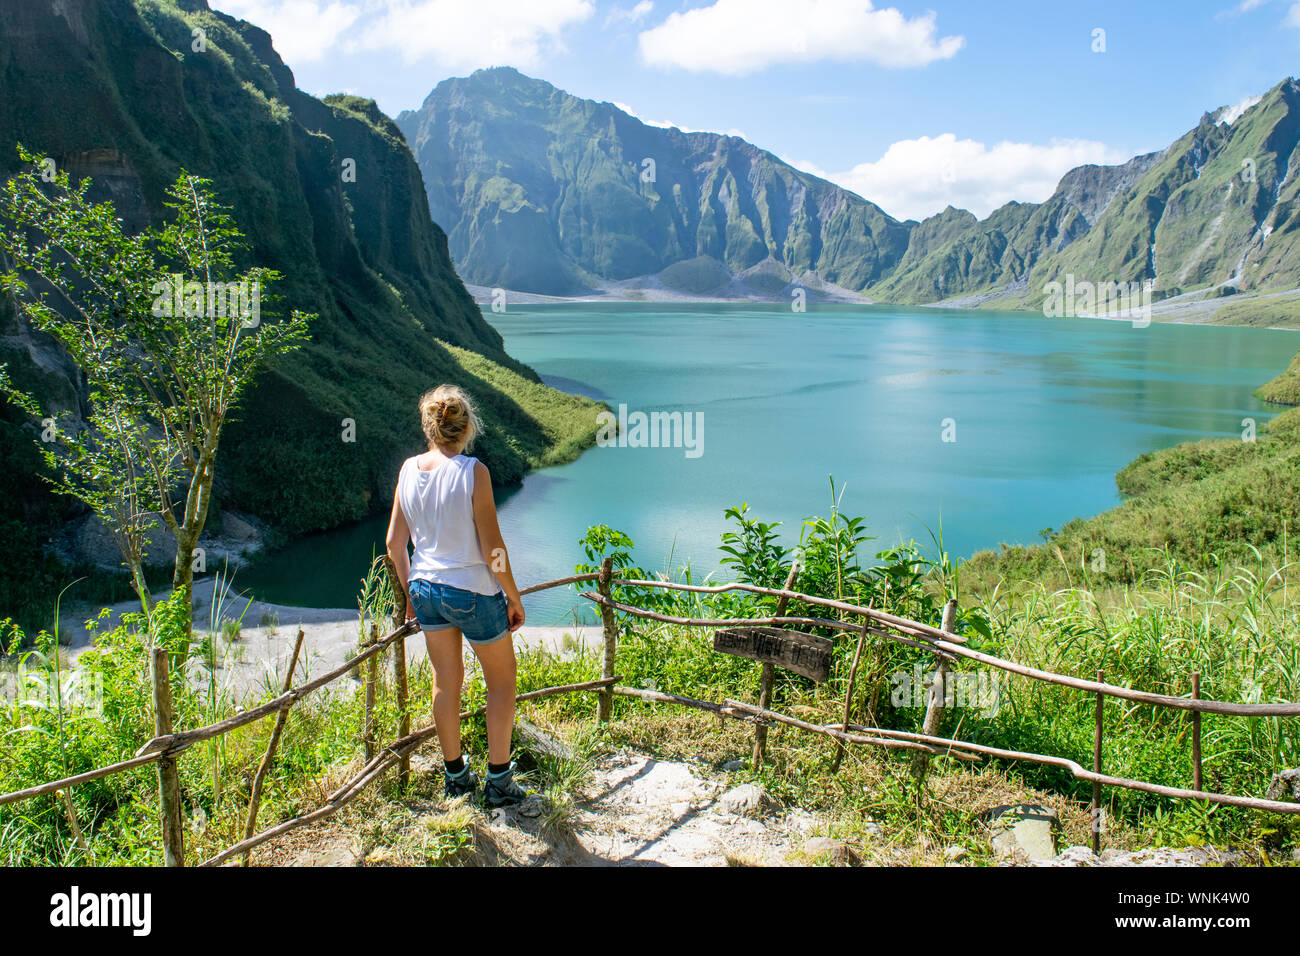 Junge weibliche Touristen auf Grat mit Blick auf den Kratersee des Mt. Pinatubo - Luzon, Philippinen Stockfoto